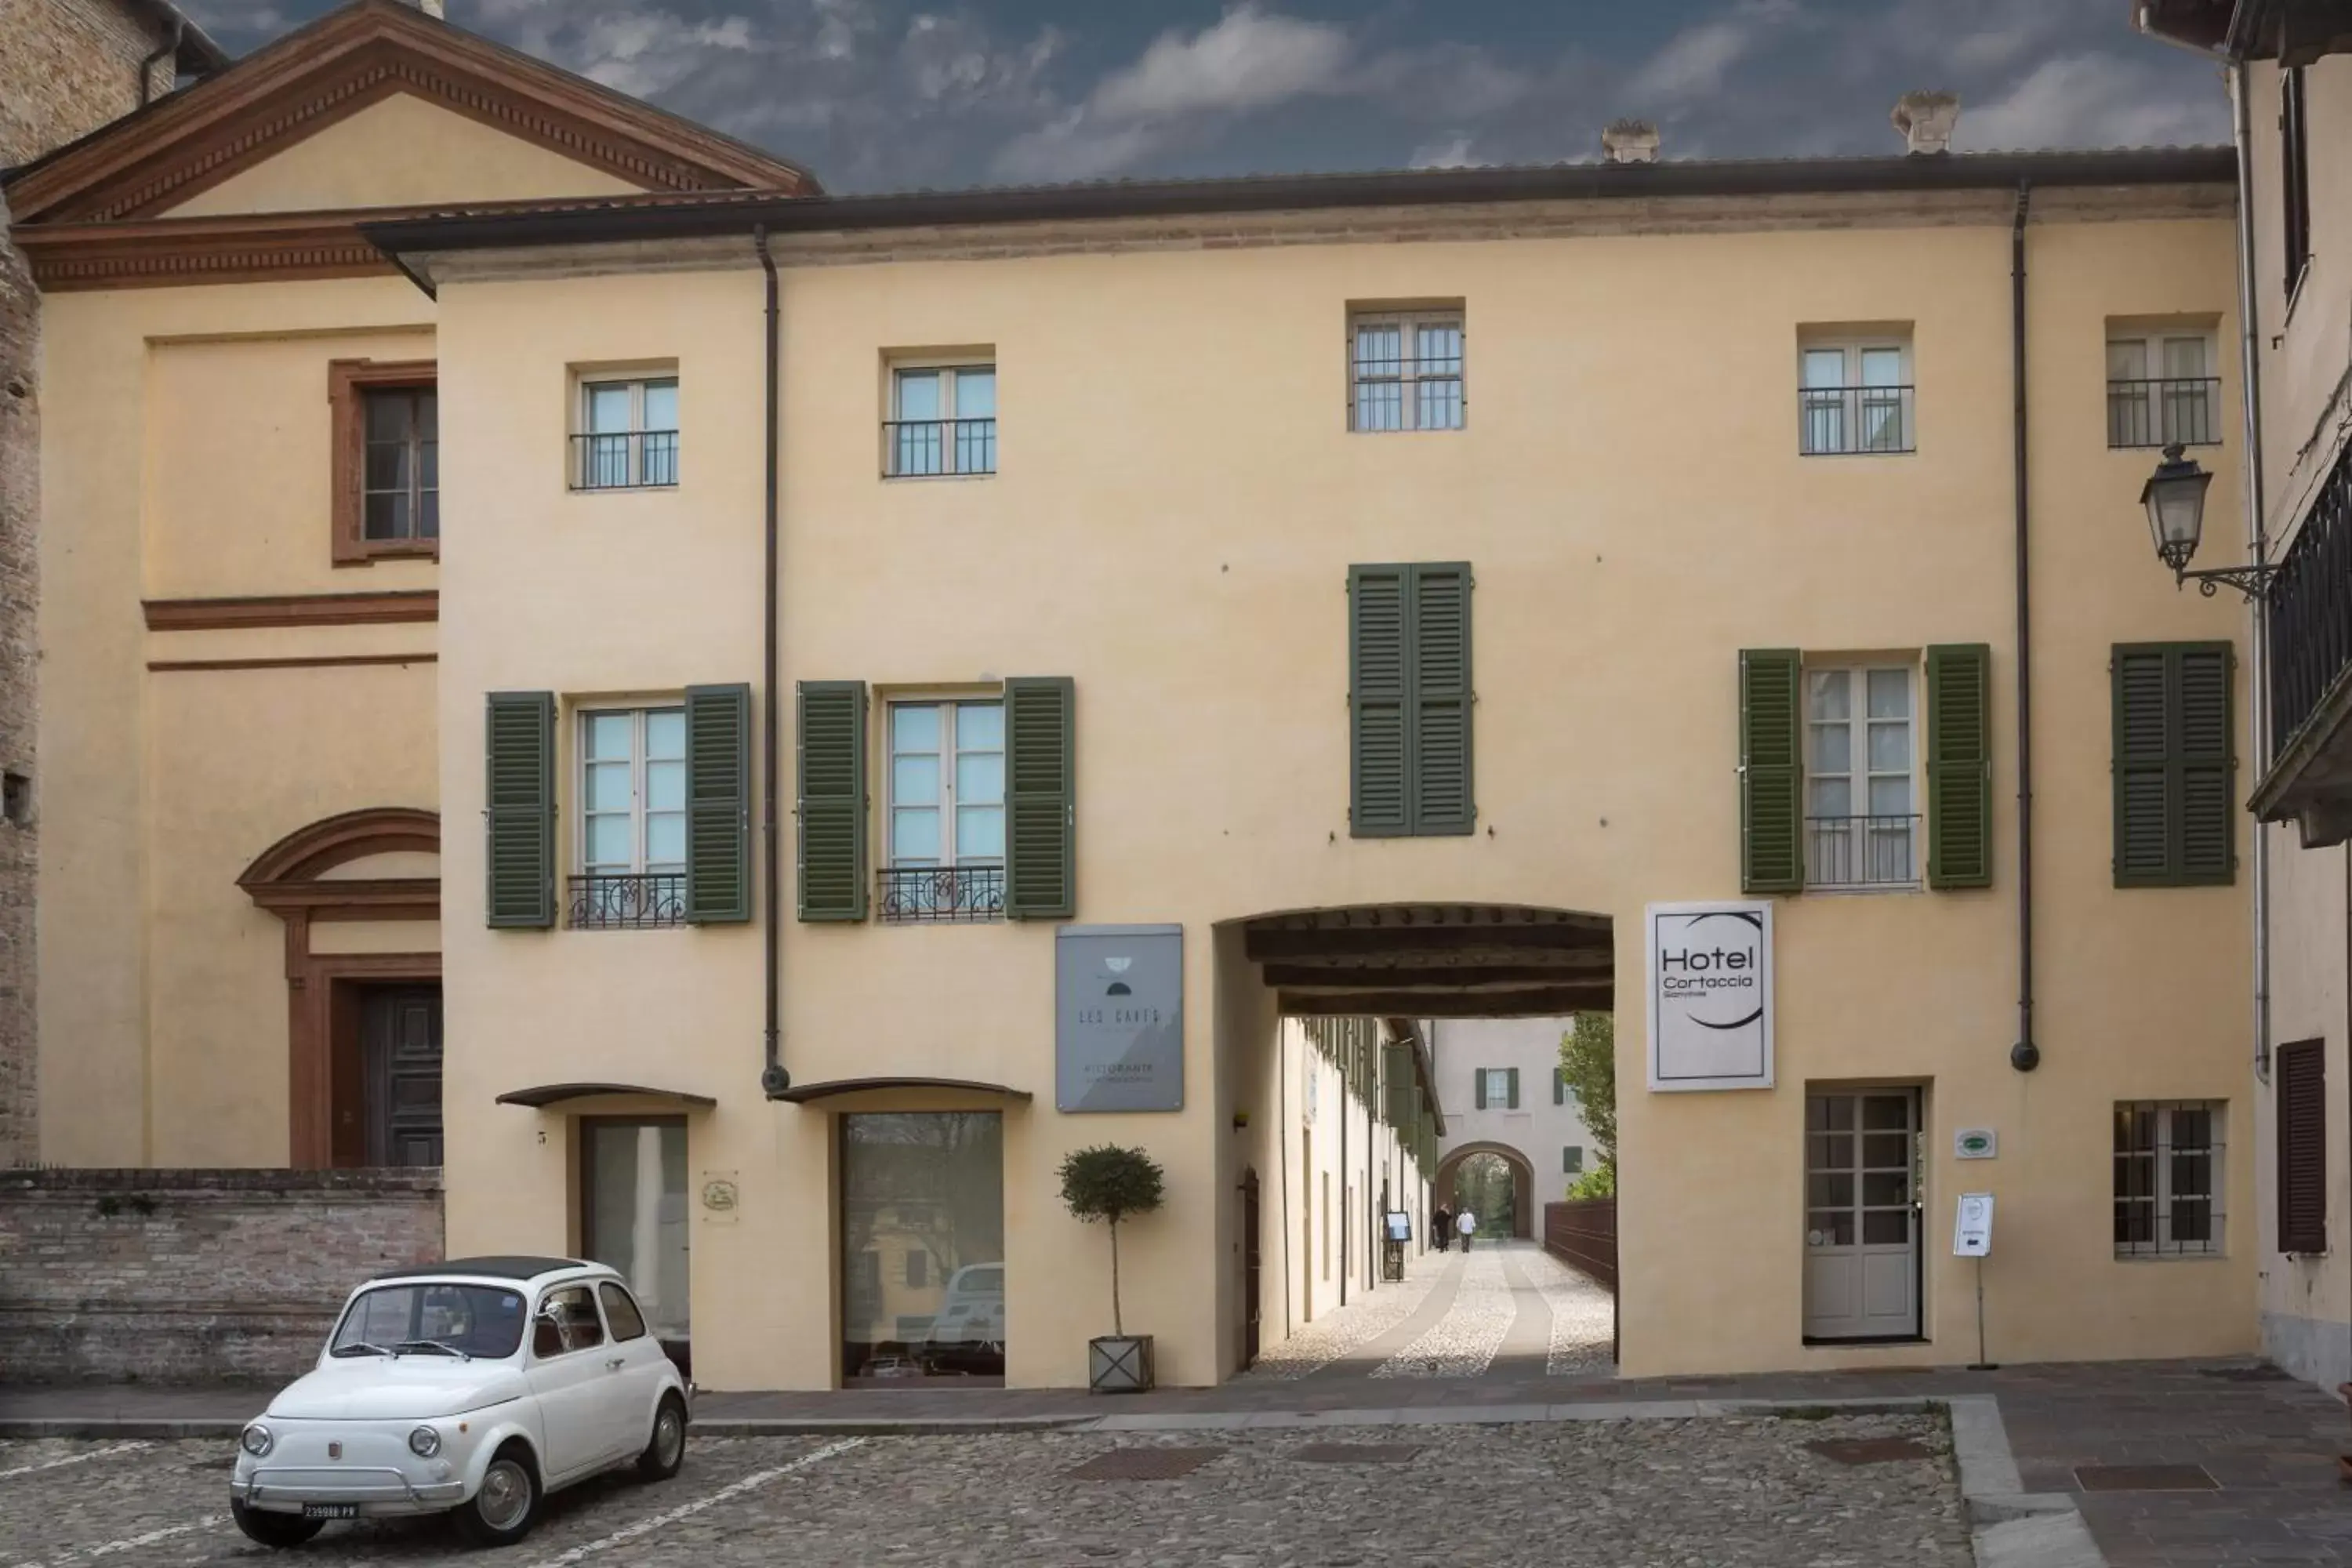 On site, Property Building in Hotel Cortaccia Sanvitale